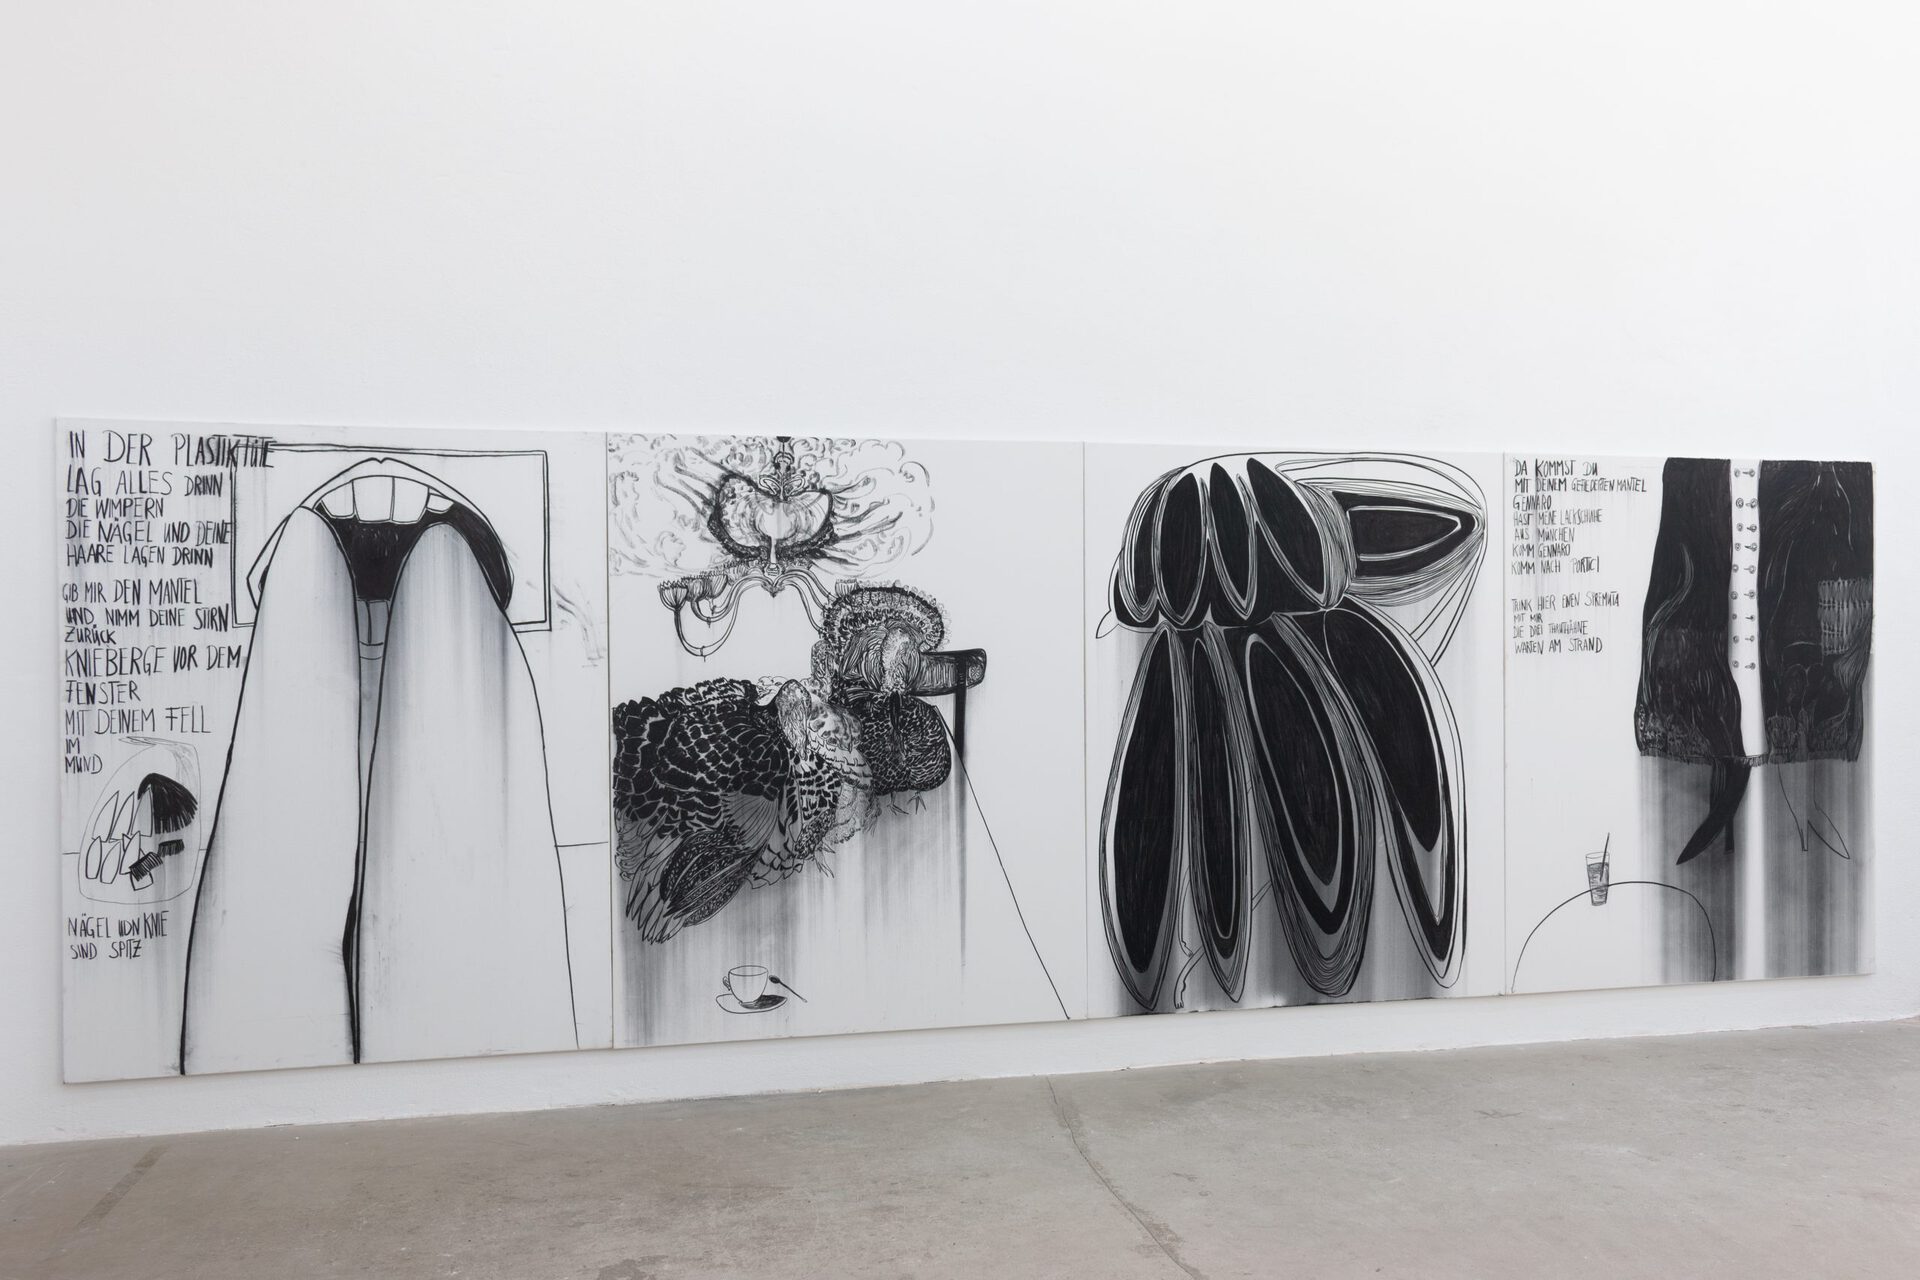 Sophie Schmidt, Knieberge, Installation View (Knieberge (I), Die drei Truthäne aus Portici, Krumbiel mit Vulkaneiern, Trink hier einen Spremuta mit mir, 2019,  2020, charcoal on canvas, 200 x 160 cm)